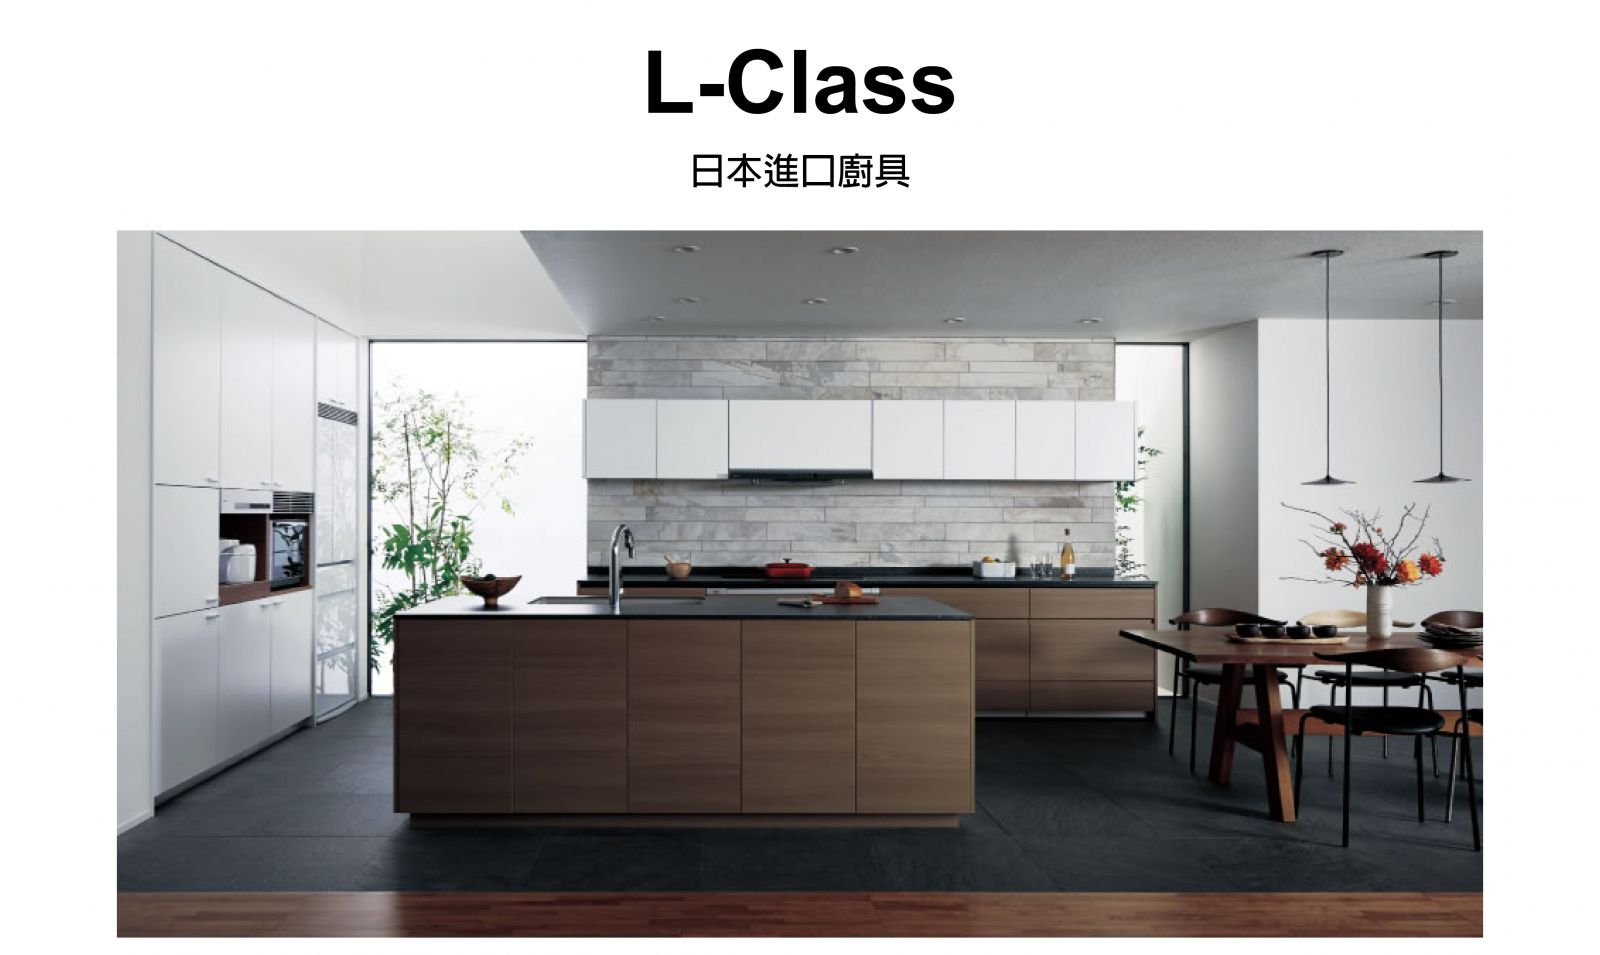 L-Class日製廚房廚具設計